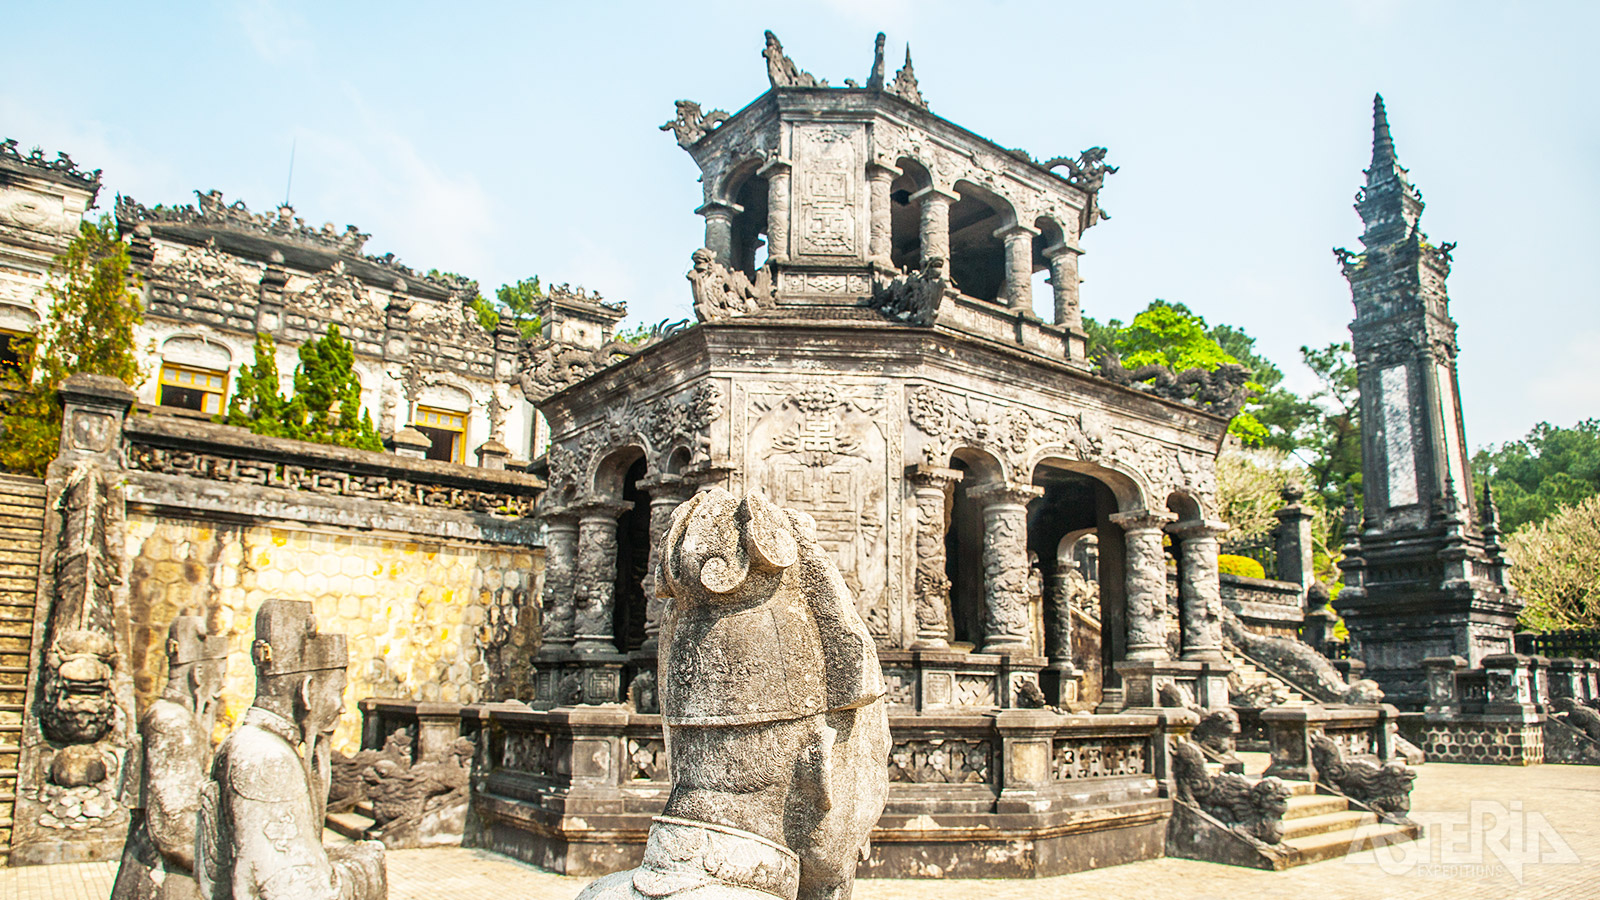 Het mooie historische centrum van Hue is uitgeroepen tot Unesco World Heritage Site